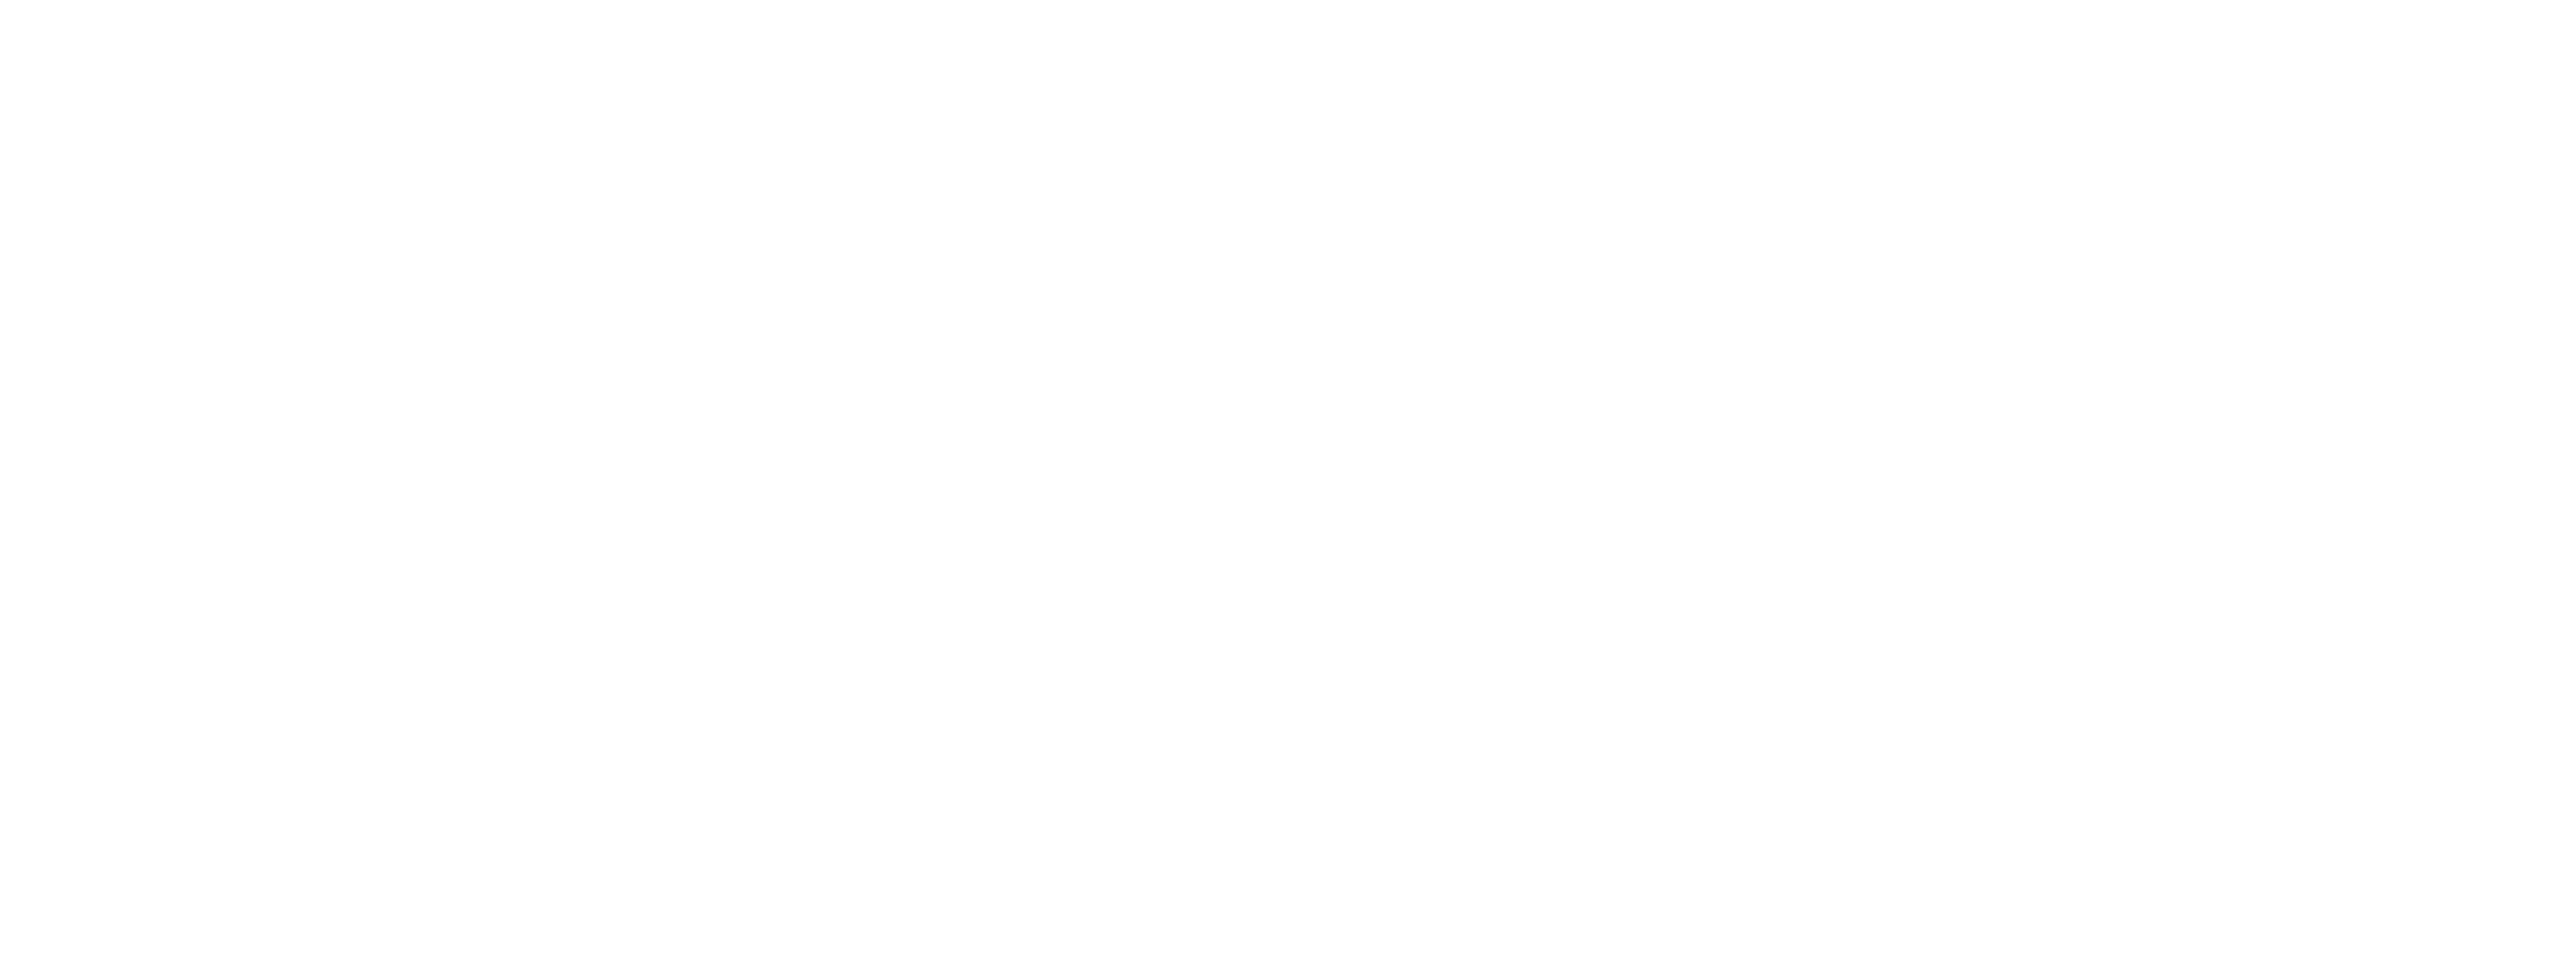 Revista Contextos Linguísticos